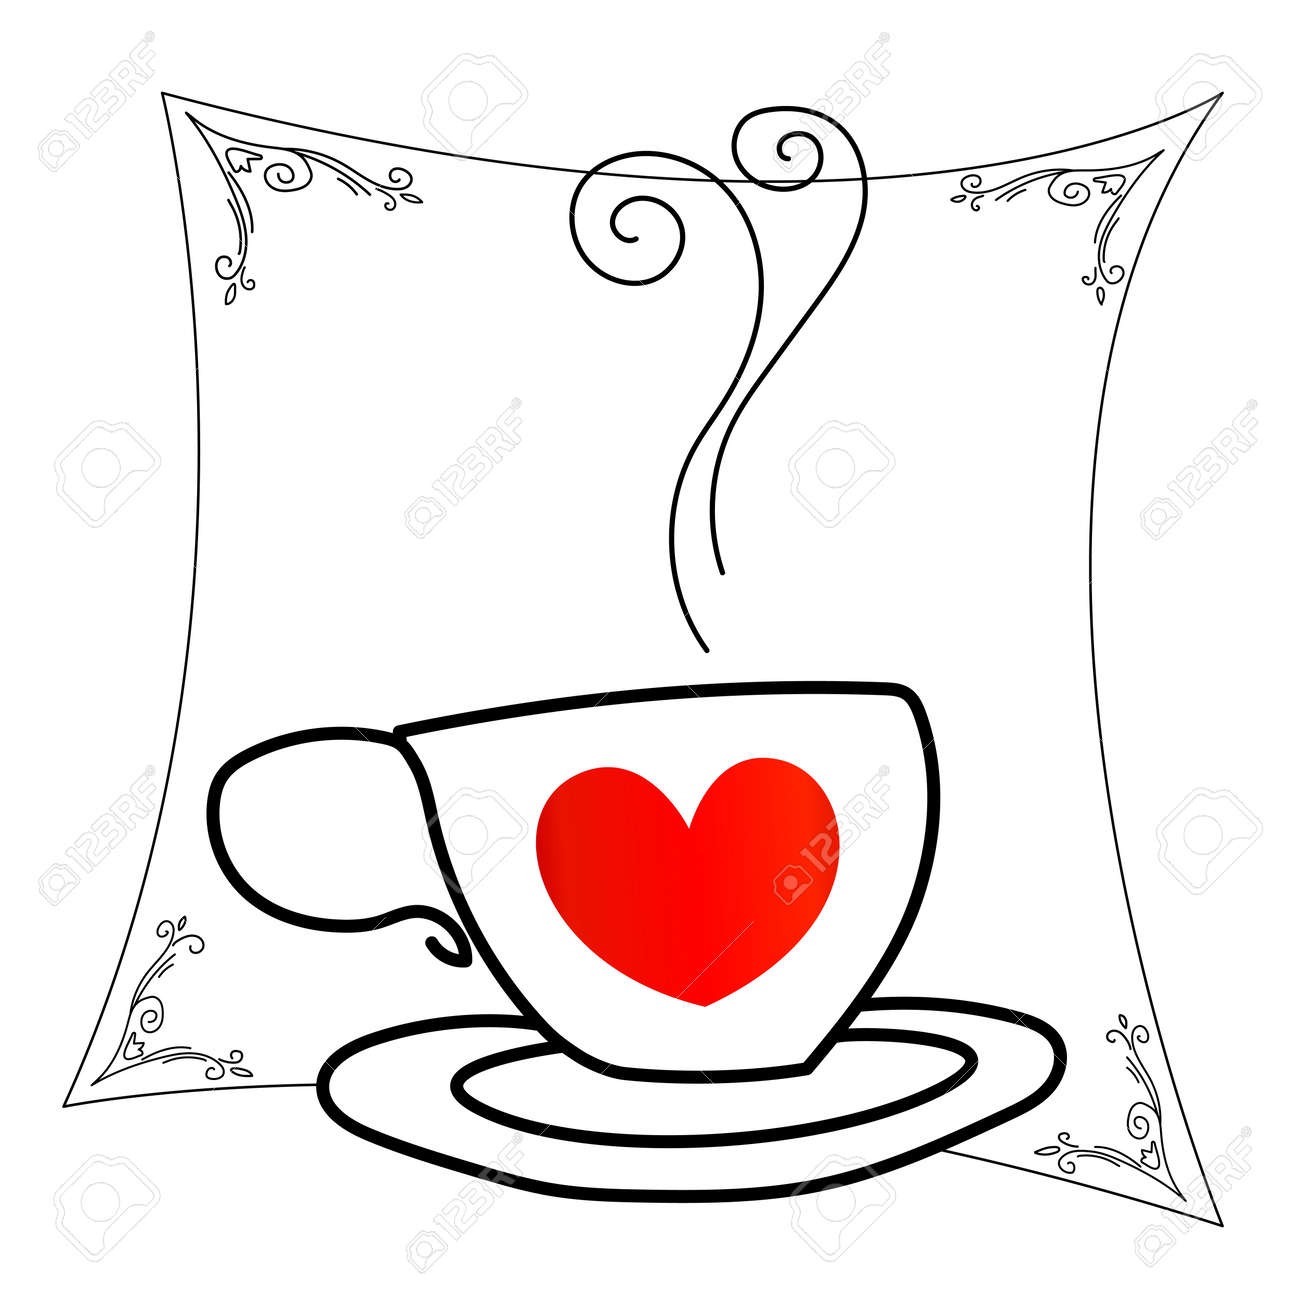 taza de cafe con corazon dibujo